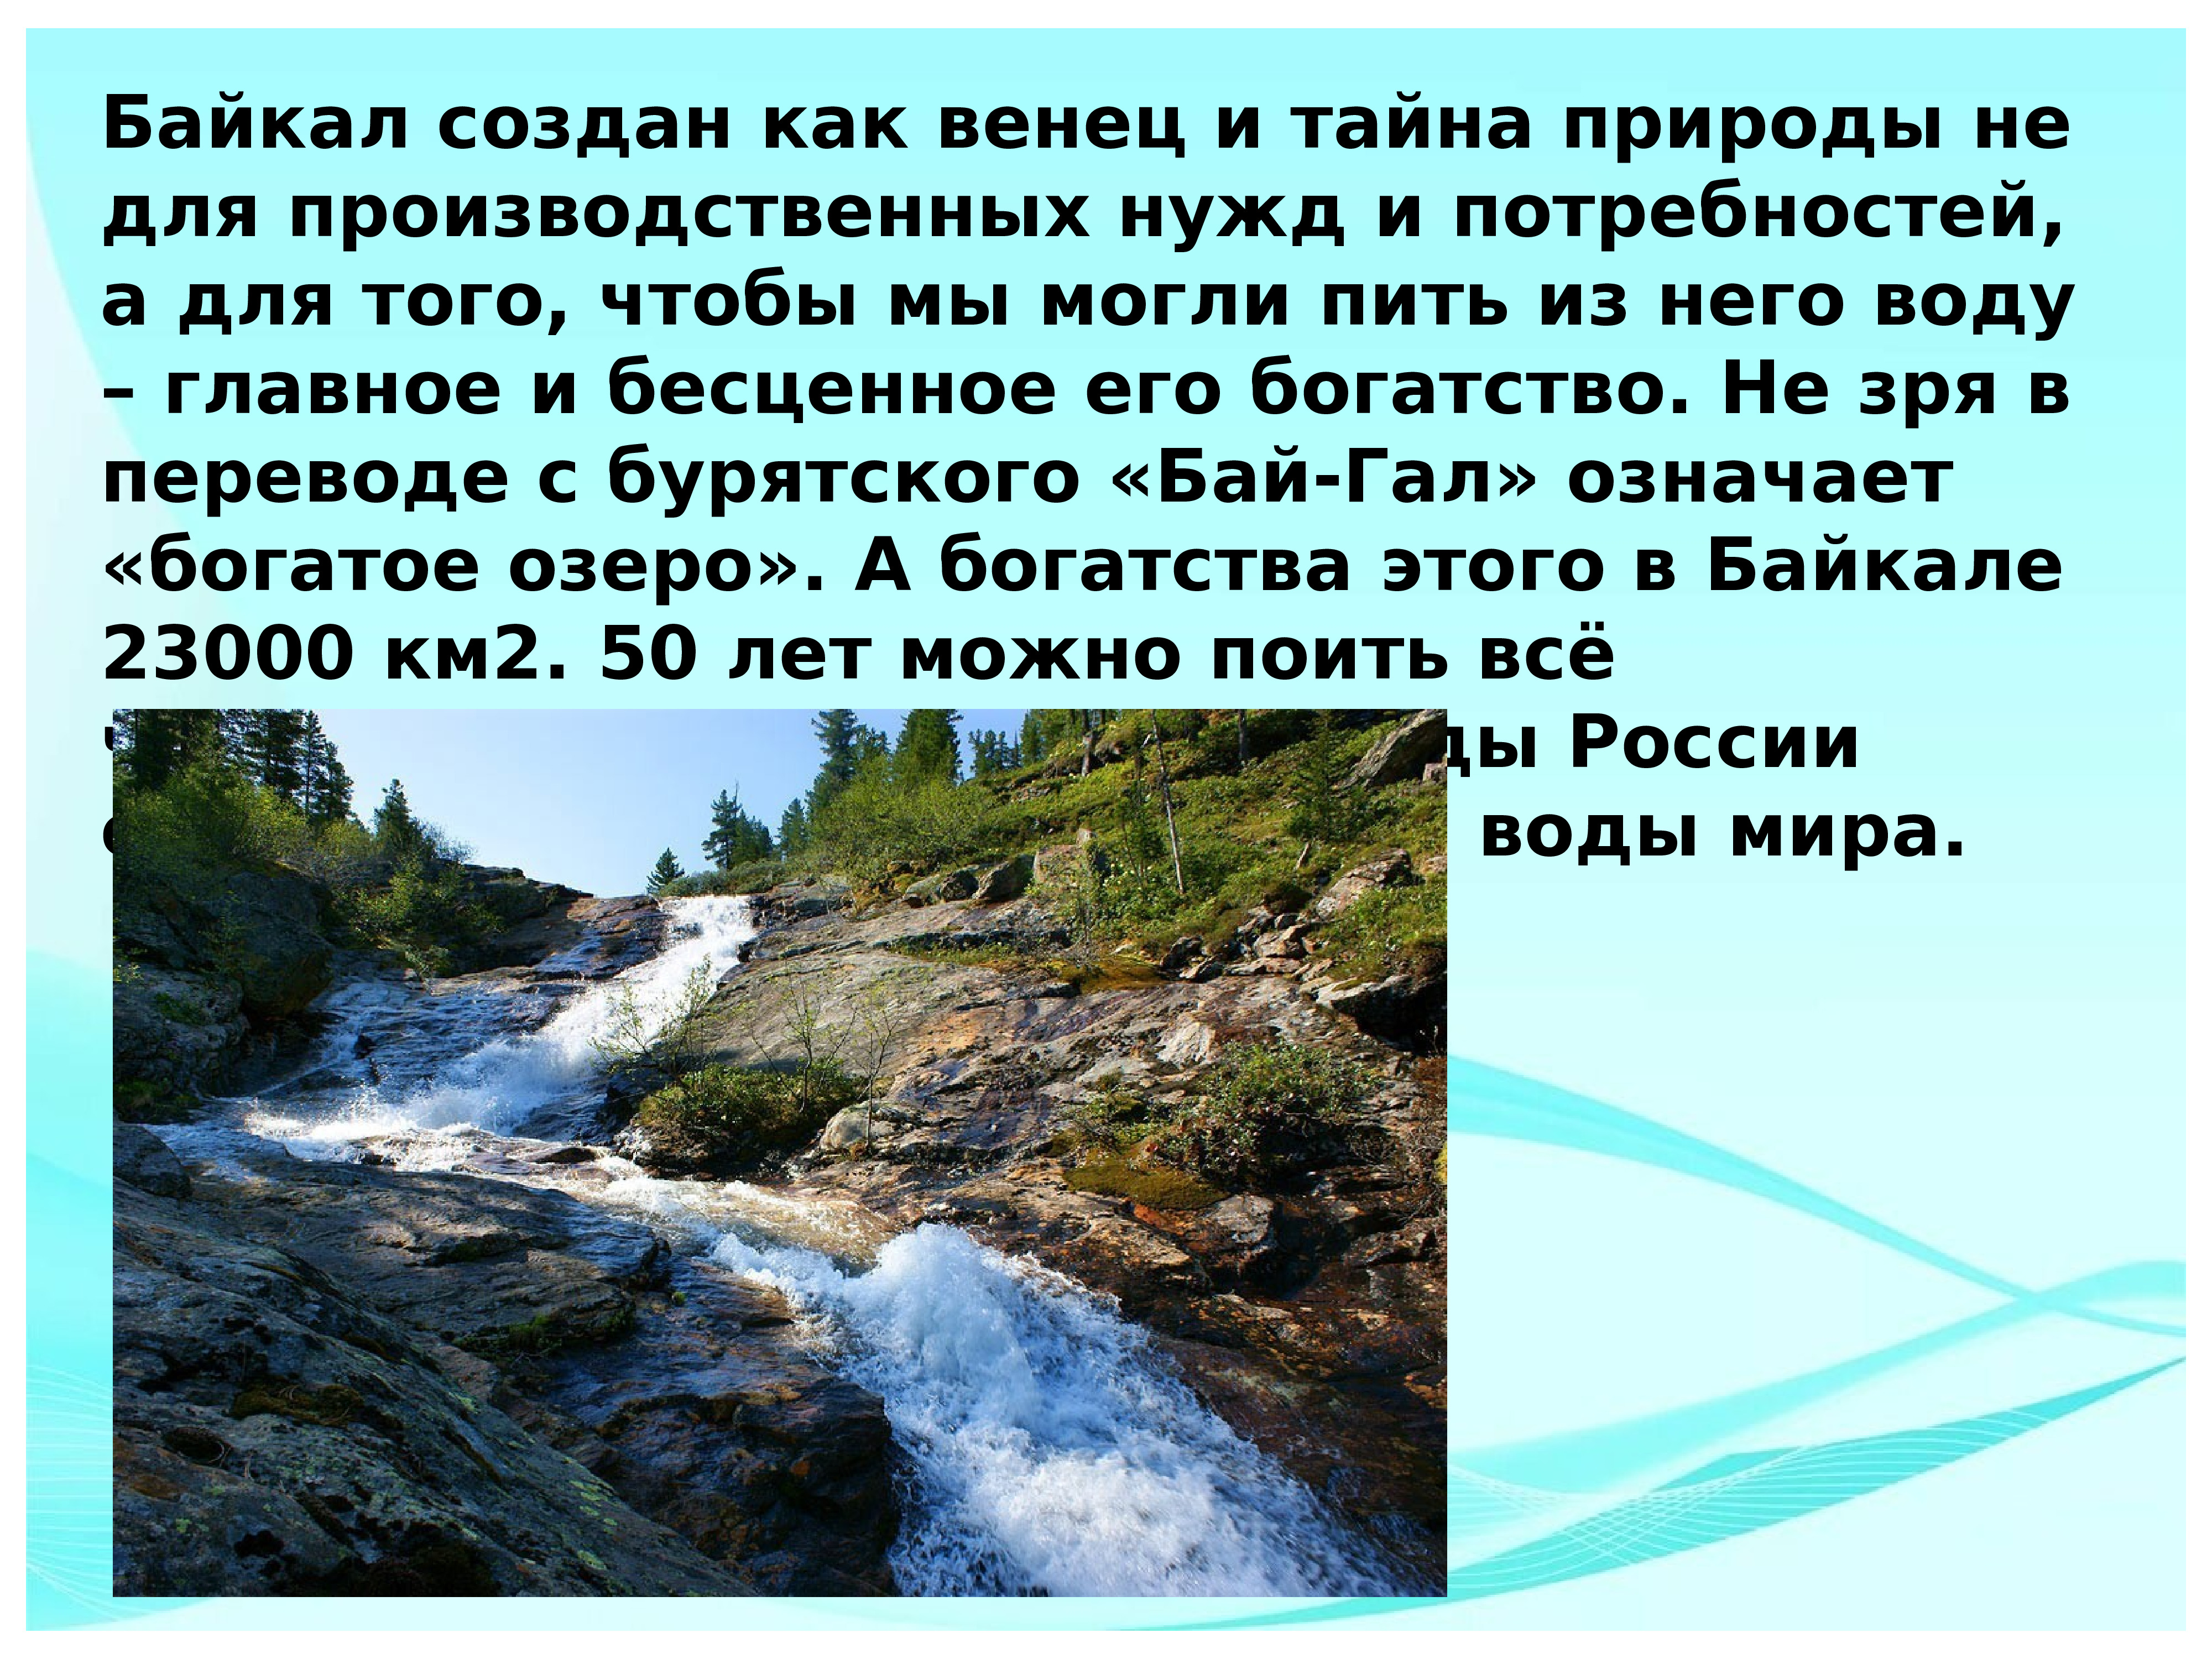 Впечатления от озера Байкал